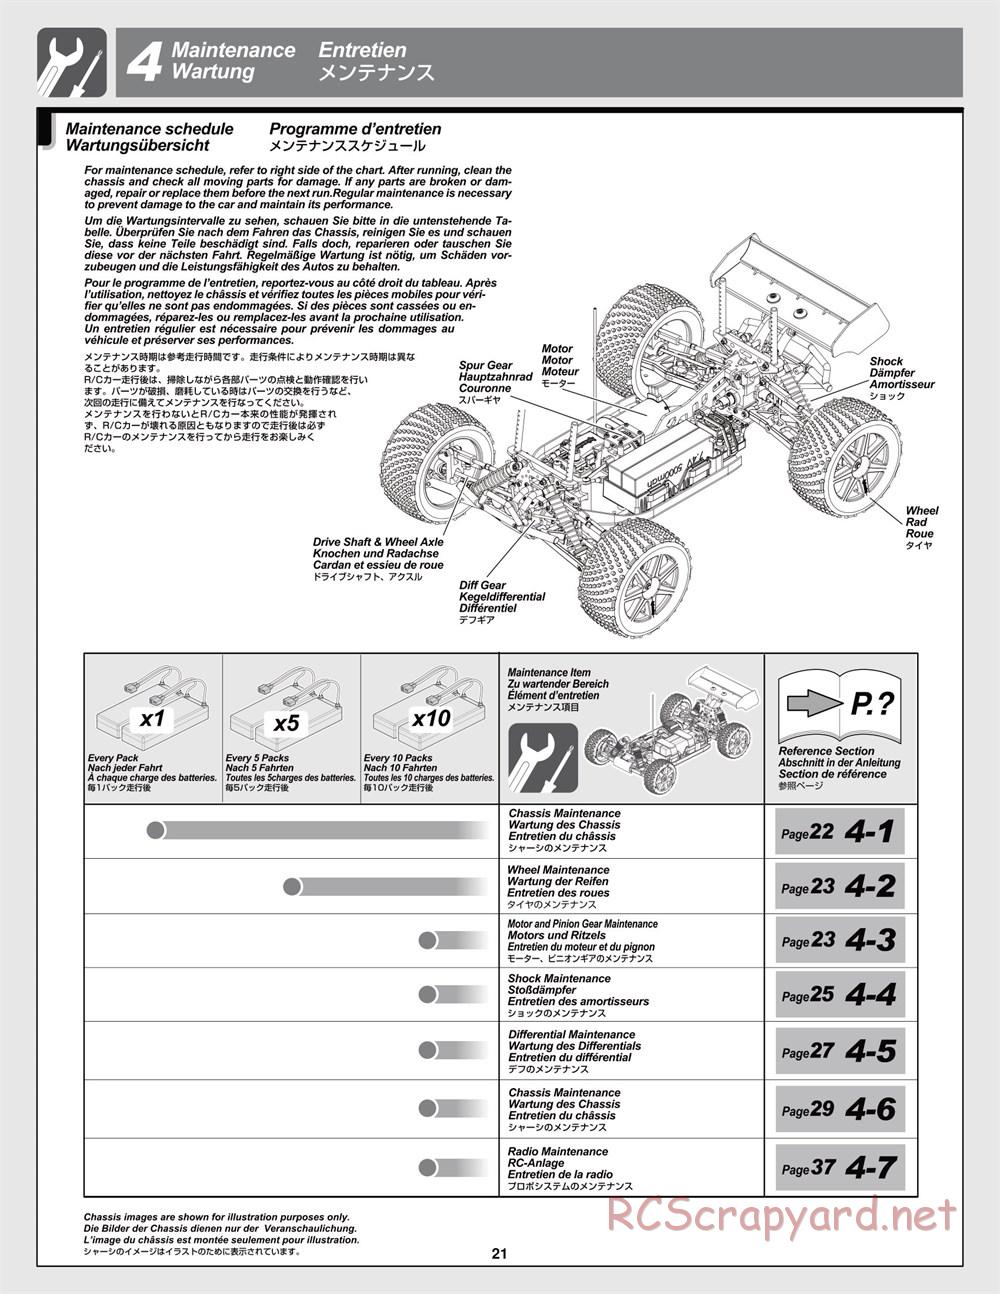 HPI - Trophy Flux Truggy - Manual - Page 21